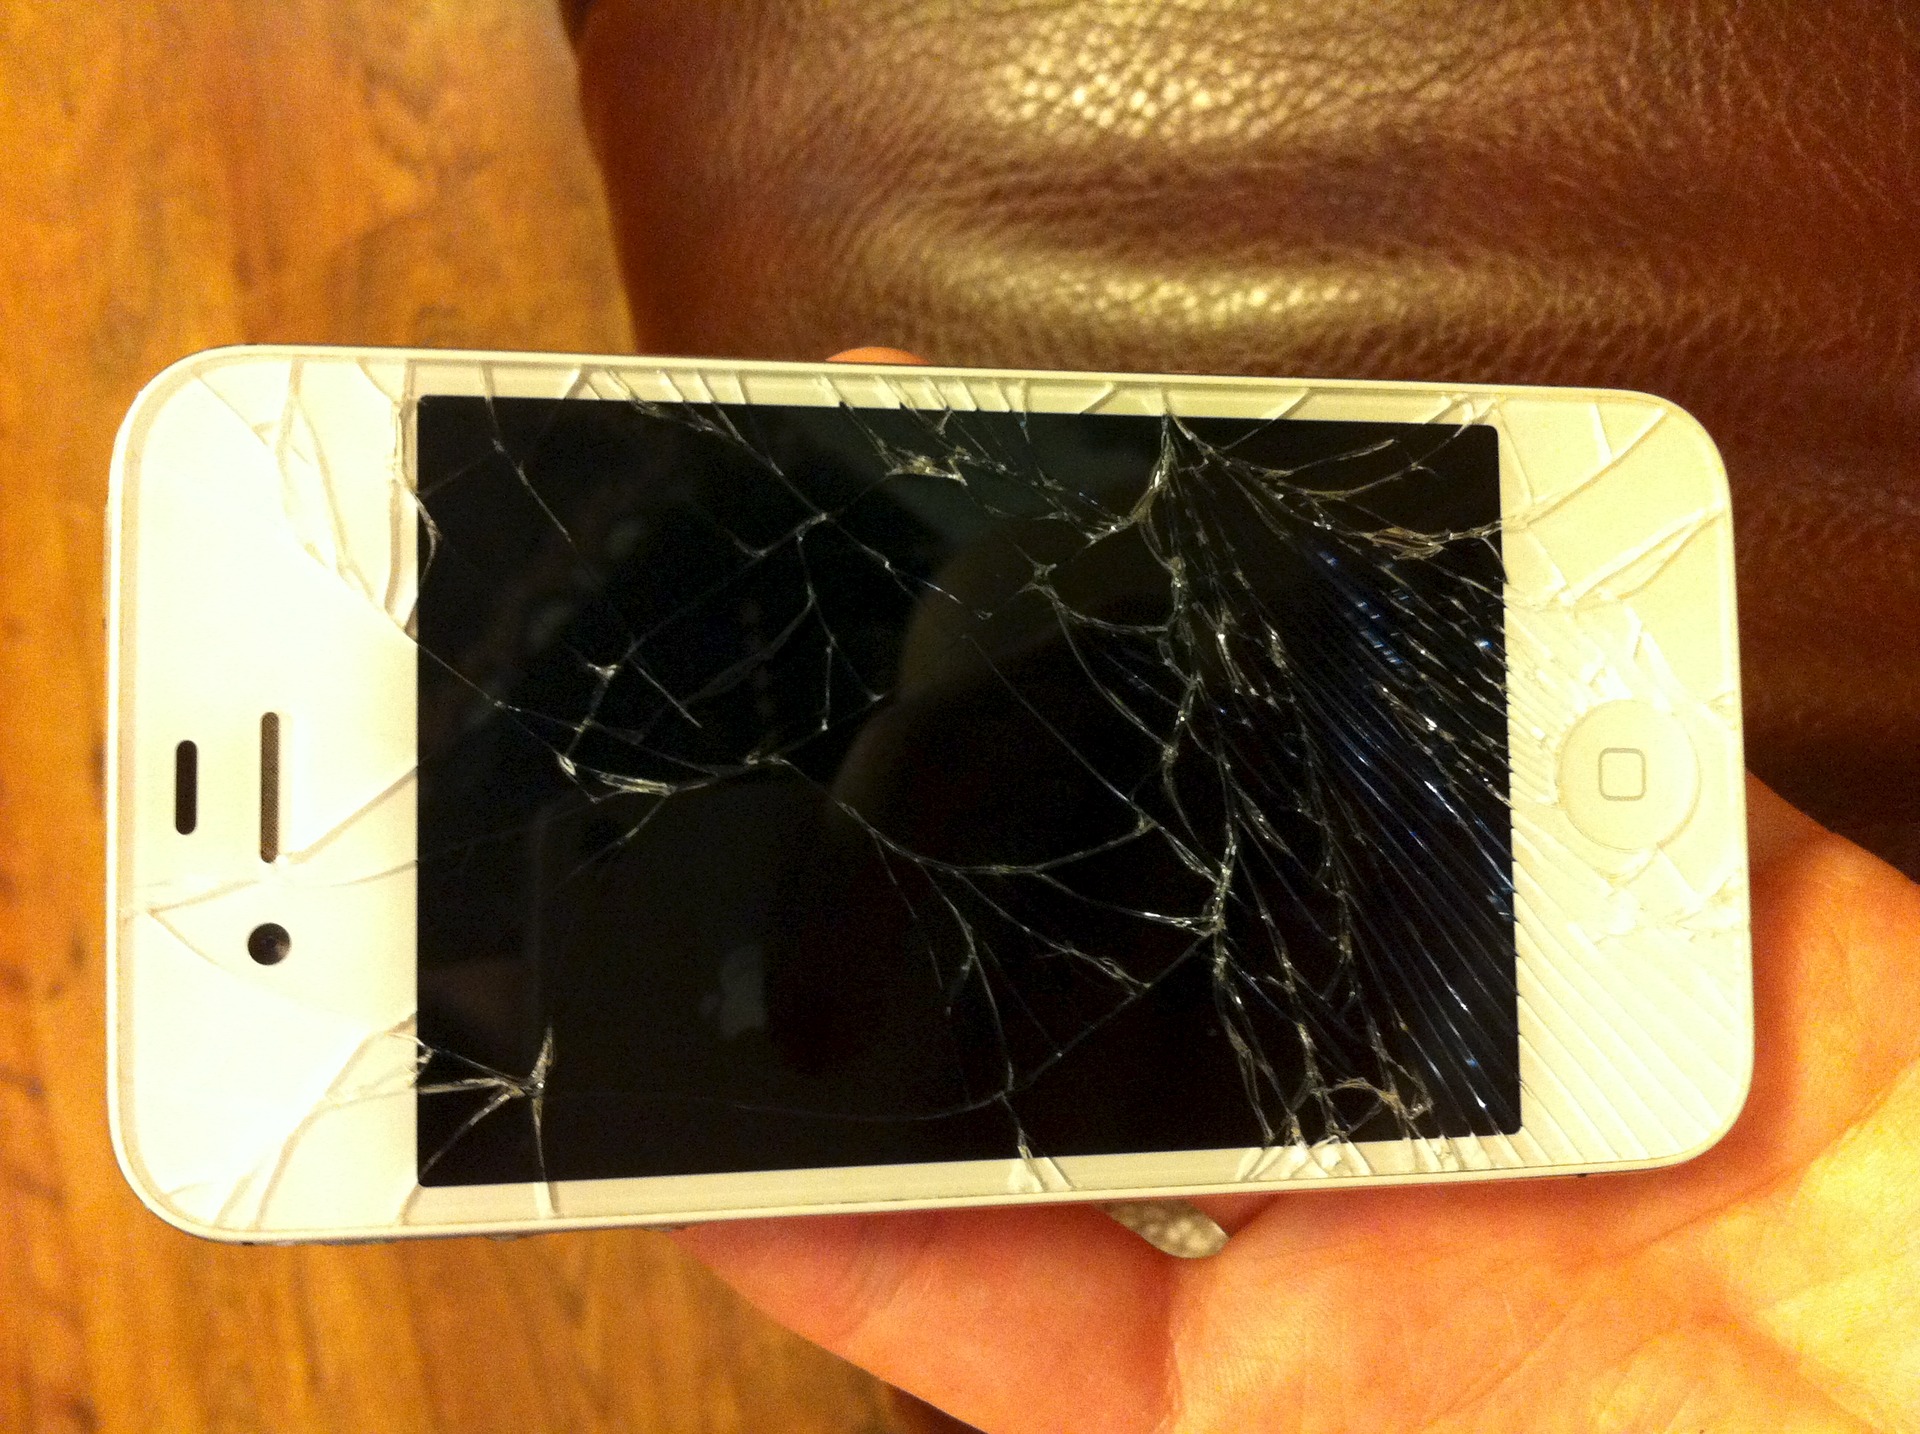 Куплю разбитый. Разбитый айфон 4s. Разбитый айфон 4. Айфон 4 треснутый. Сломанный смартфон.